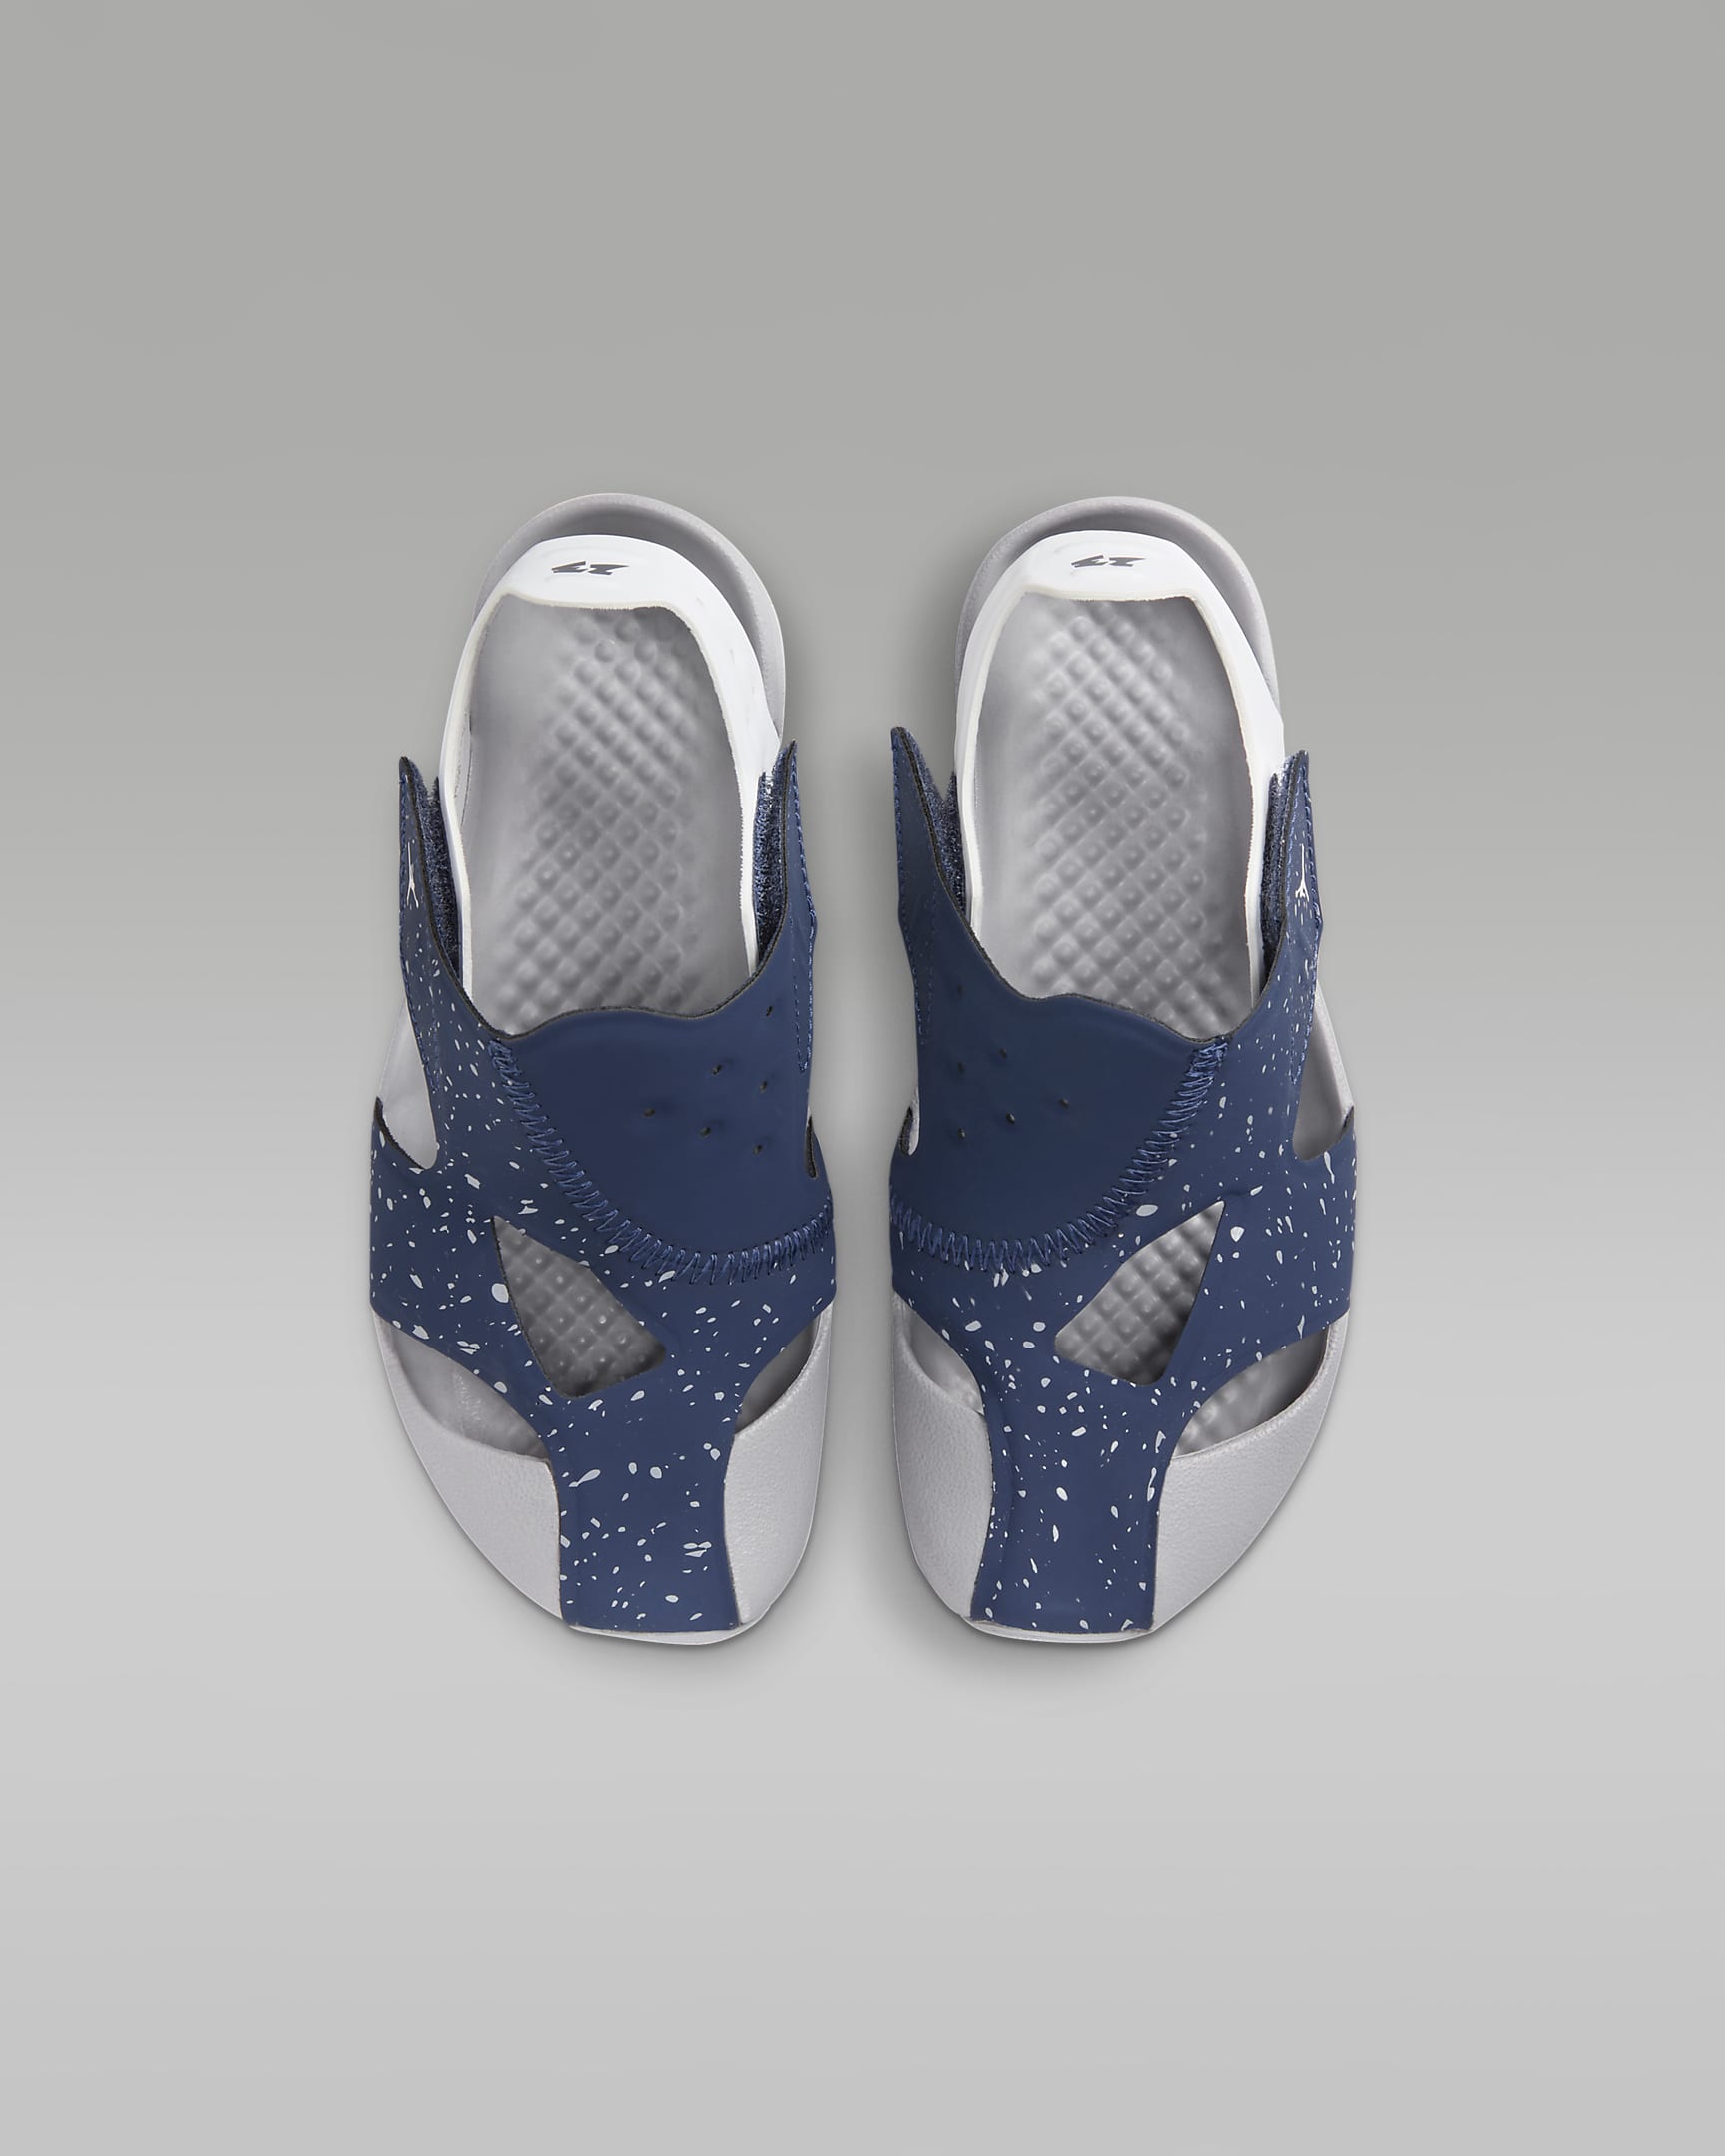 Chaussure Jordan Flare pour Jeune enfant - Midnight Navy/Blanc/Cement Grey